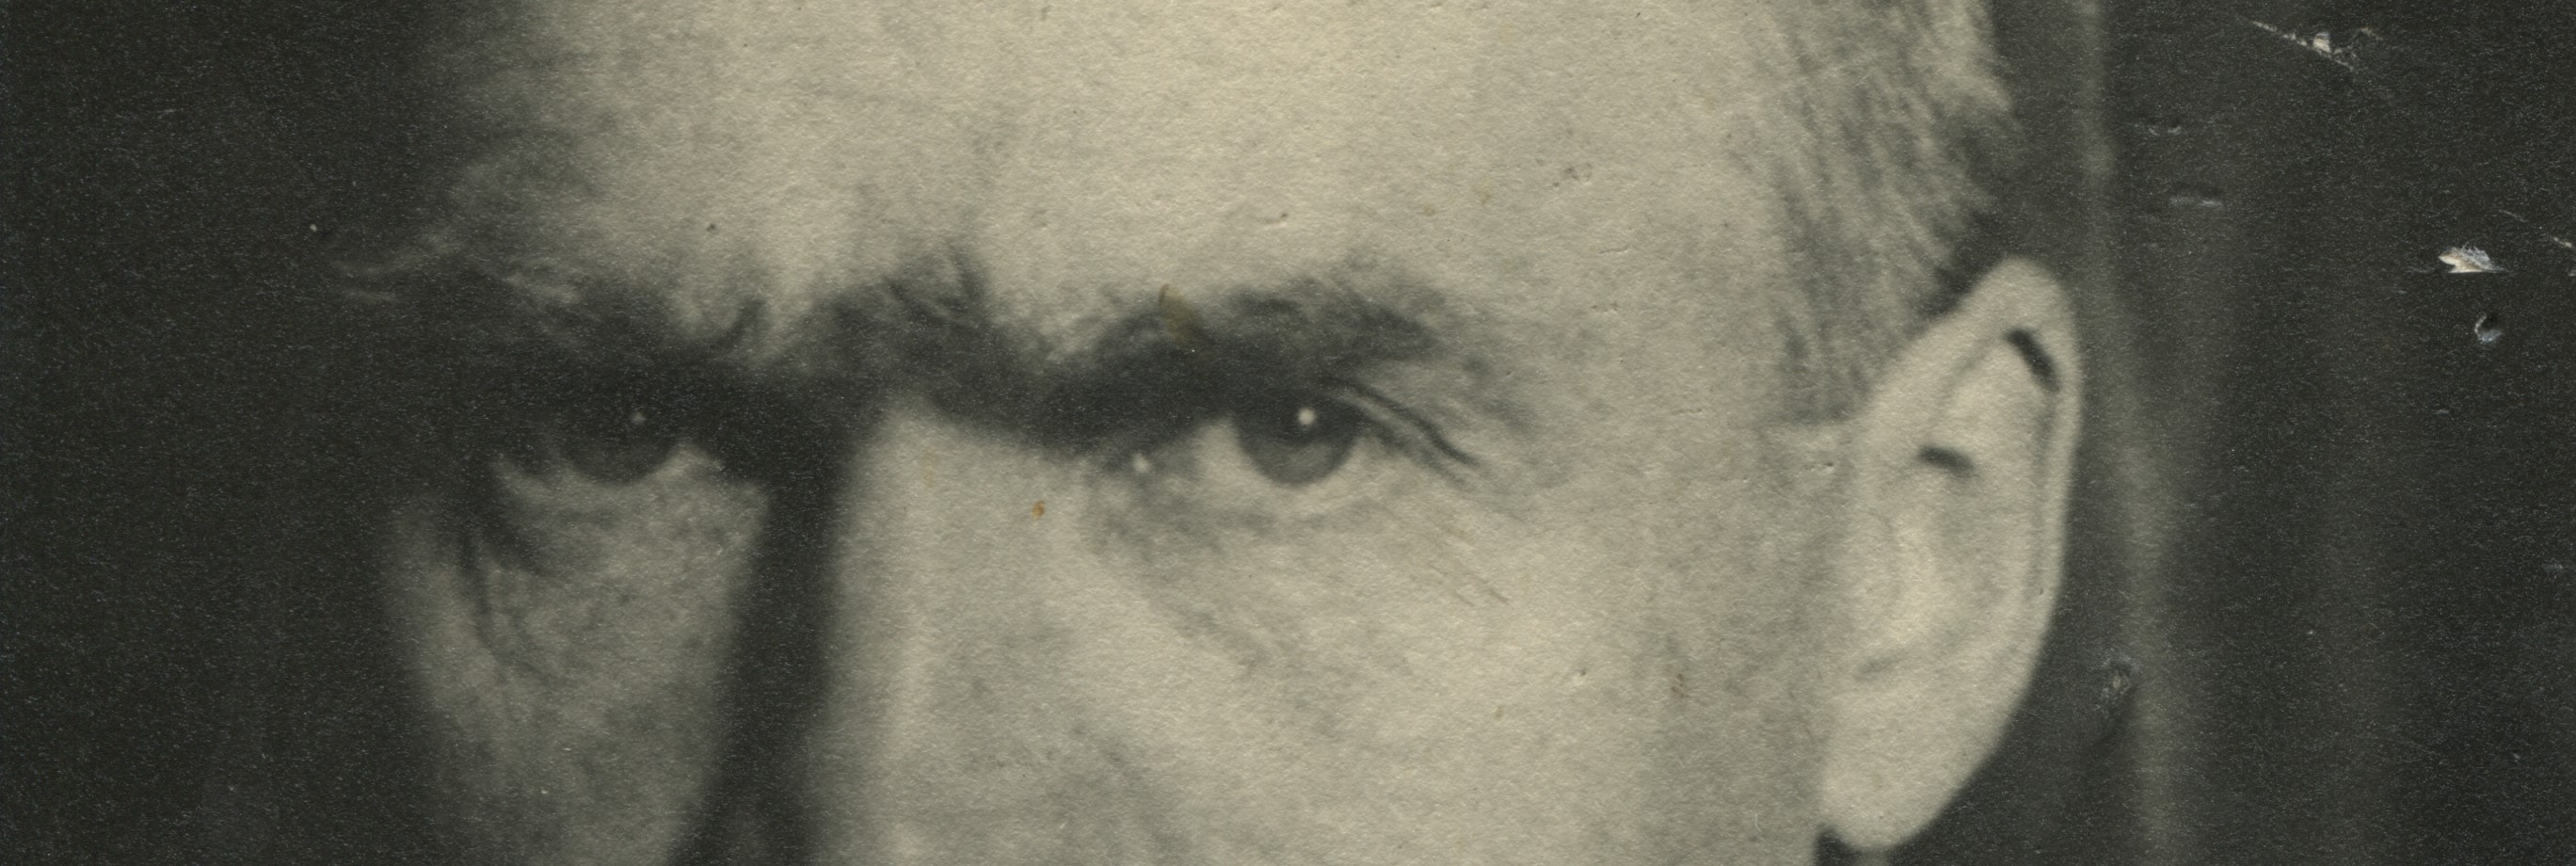 zbliżenie na oczy Józefa Piłsudskiego